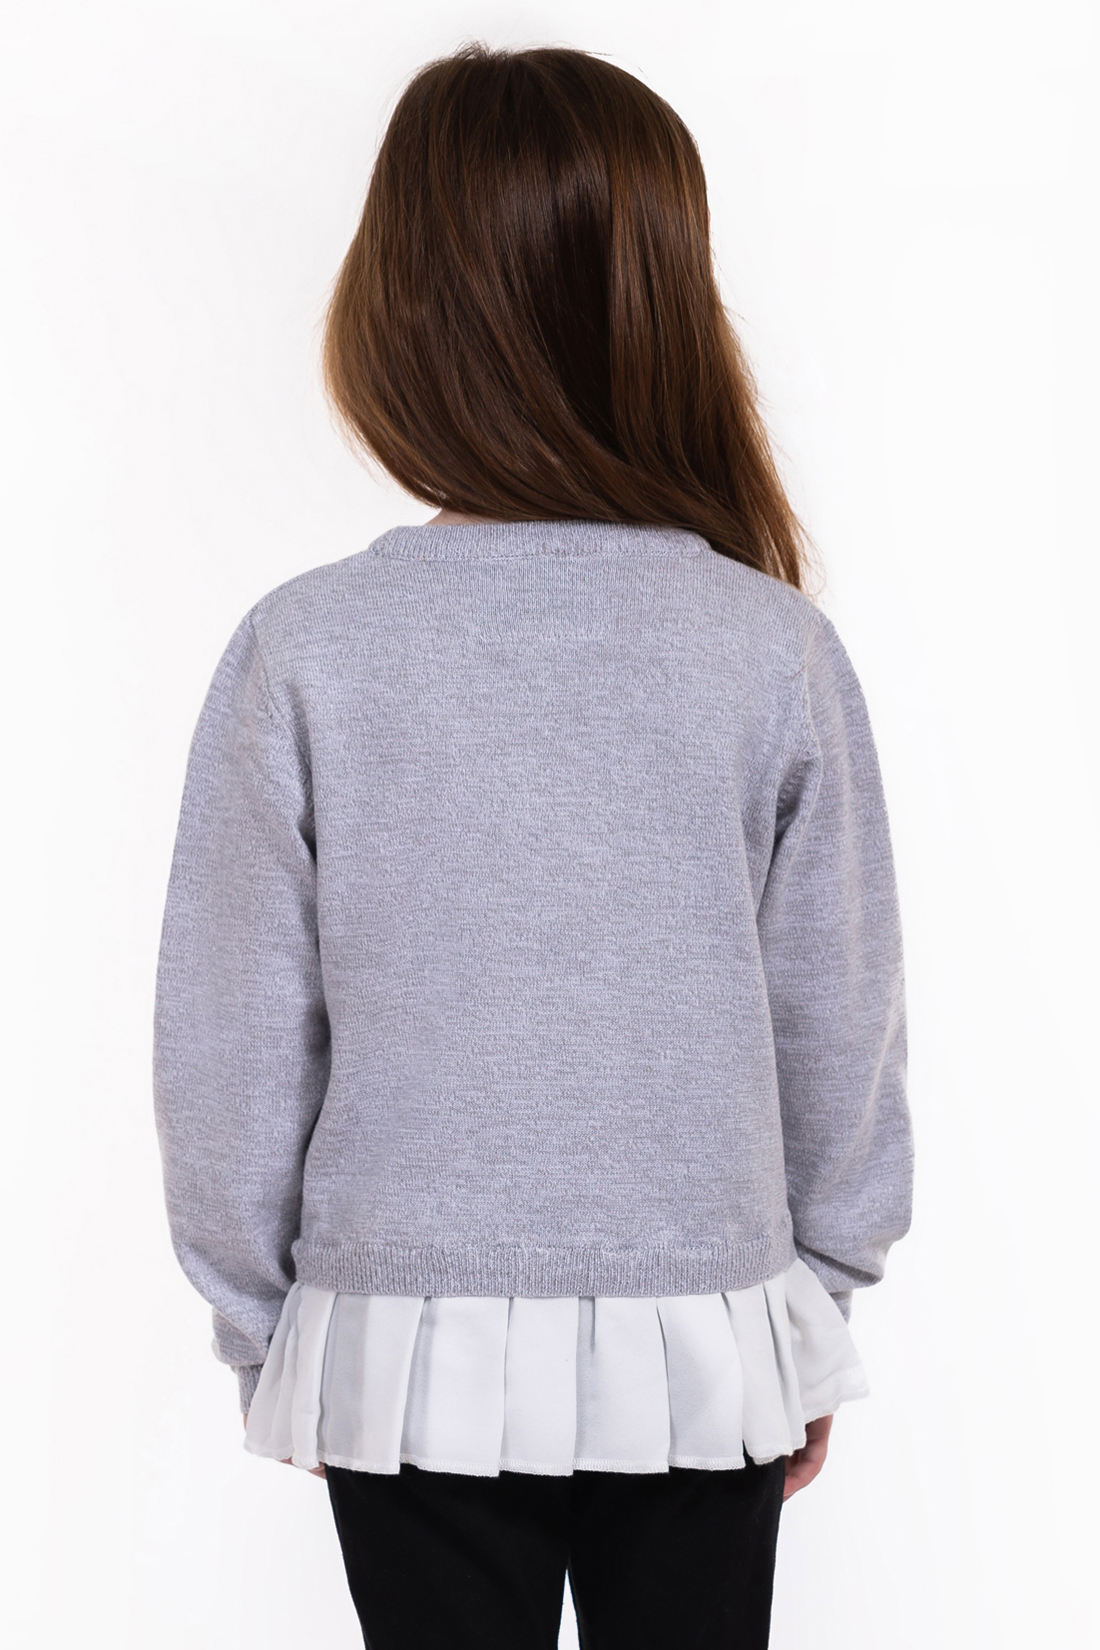 Джемпер для девочки (арт. baon BK139001), размер 110-116, цвет silver melange#серый Джемпер для девочки (арт. baon BK139001) - фото 2